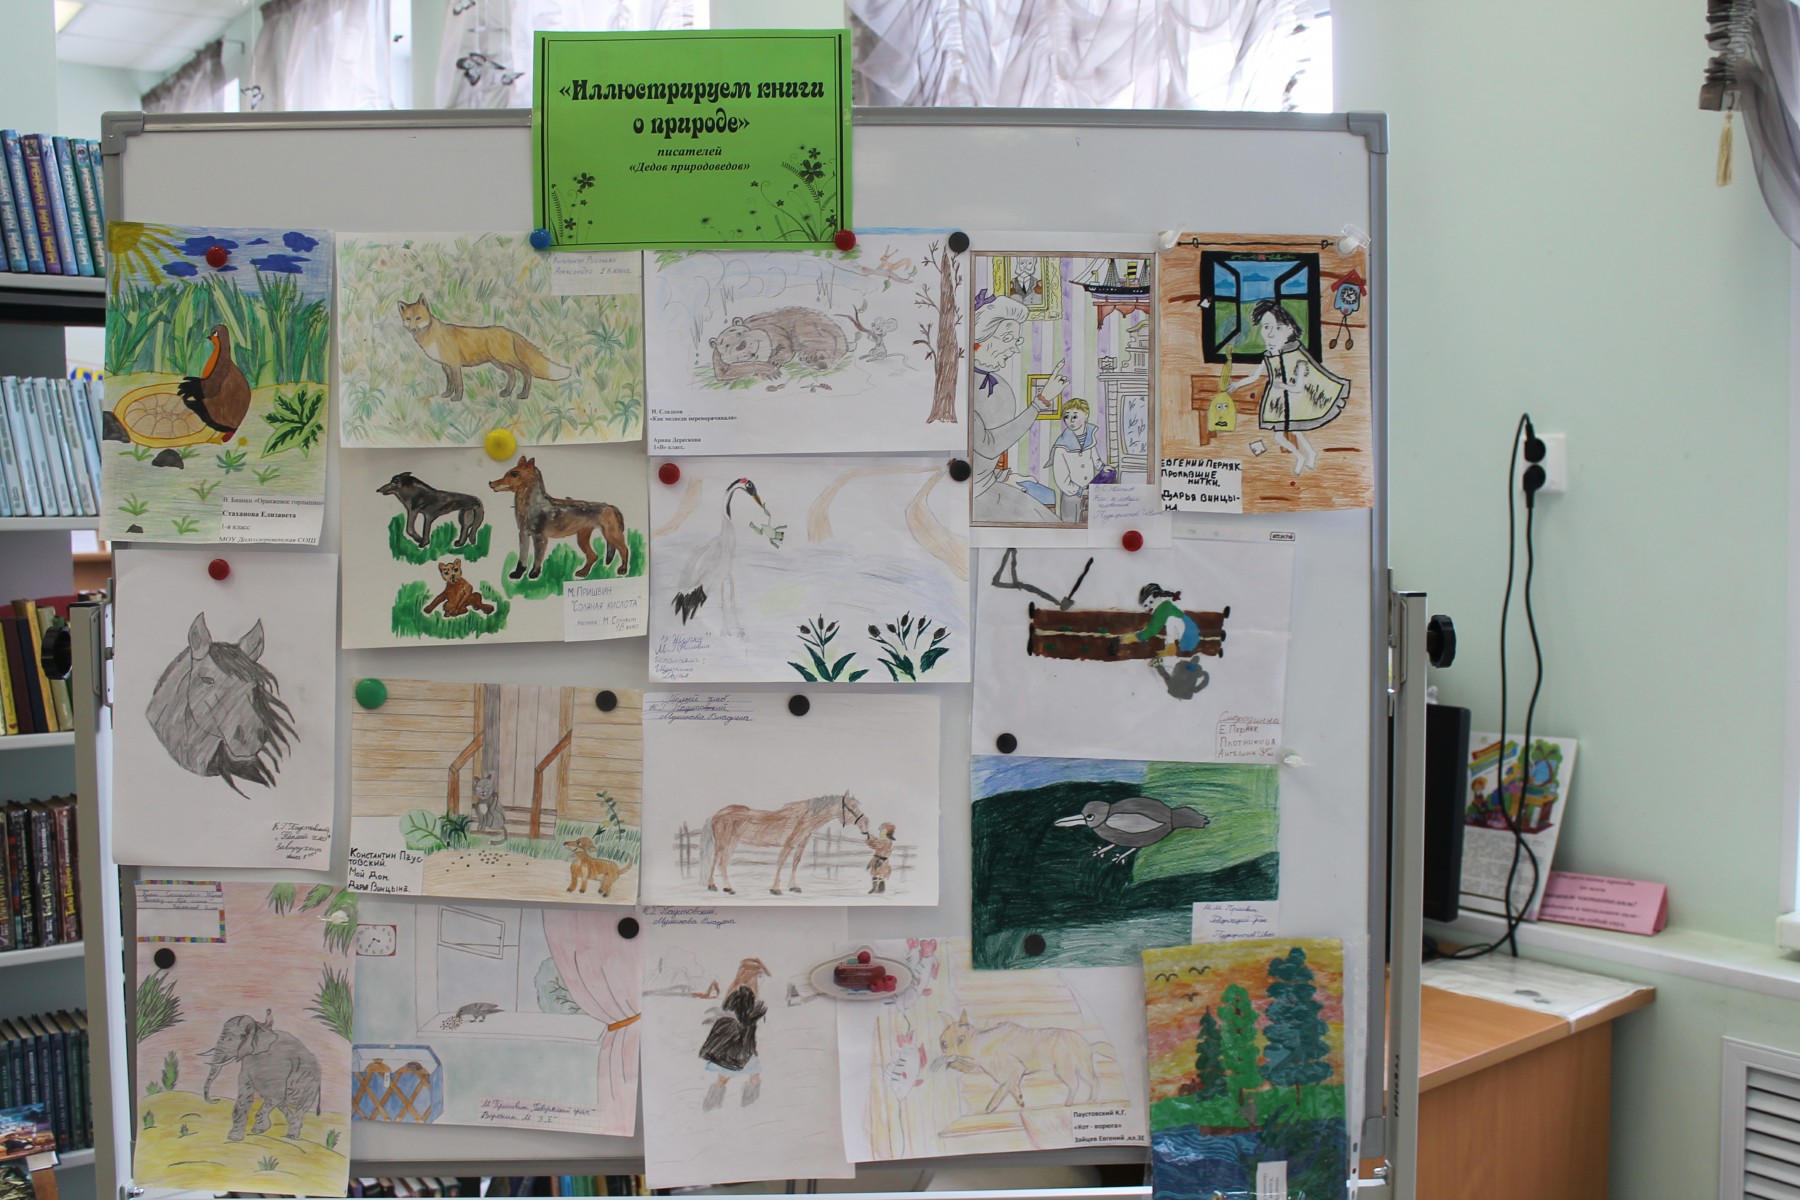 рисунки участников конкурса "Иллюстрируем книги о природе писателей Дедов Природоведов"